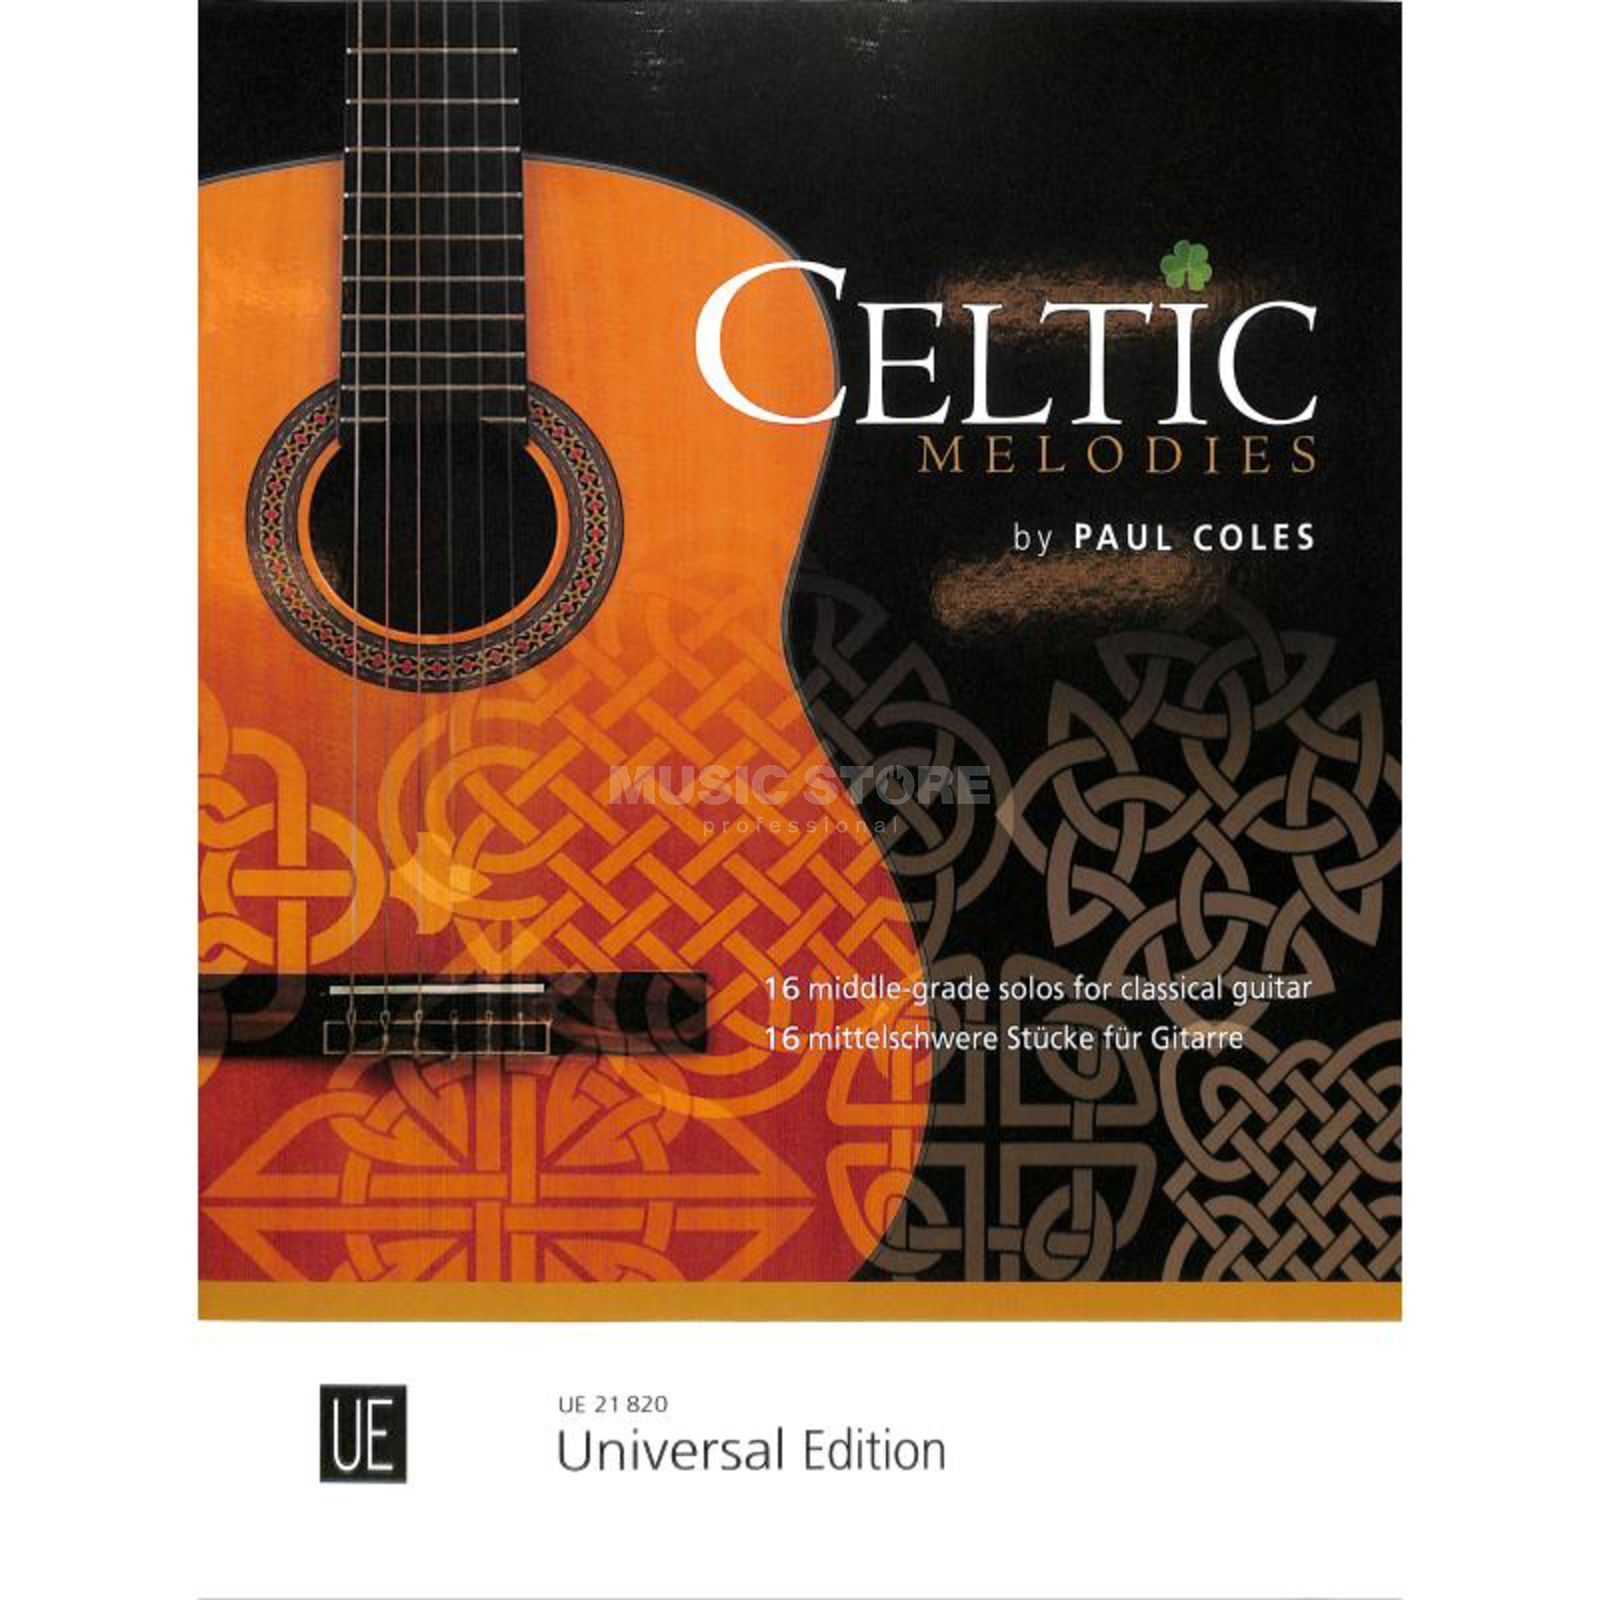 Celtic Melodies (COLES PAUL)